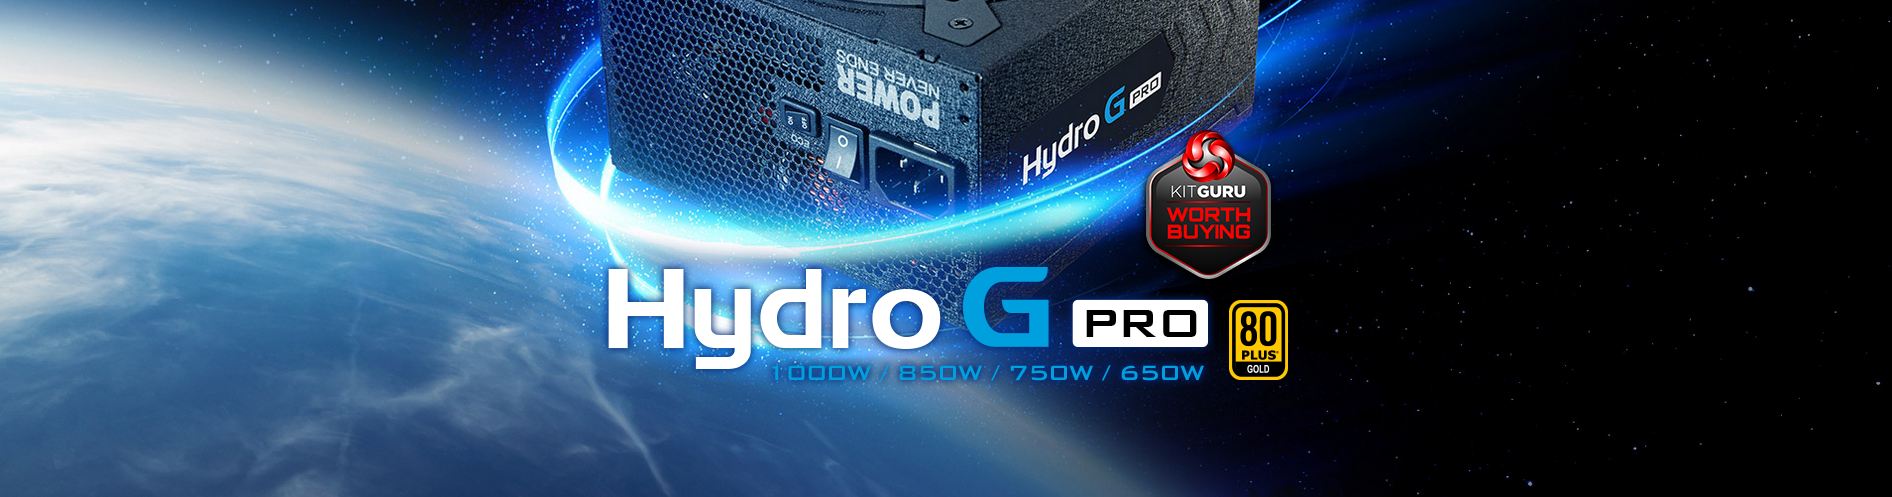 Nguồn FSP Power Supply HYDRO G PRO Series Model HG2-750 Active PFC (80 Plus Gold/Full Modular/Màu Đen) giới thiệu